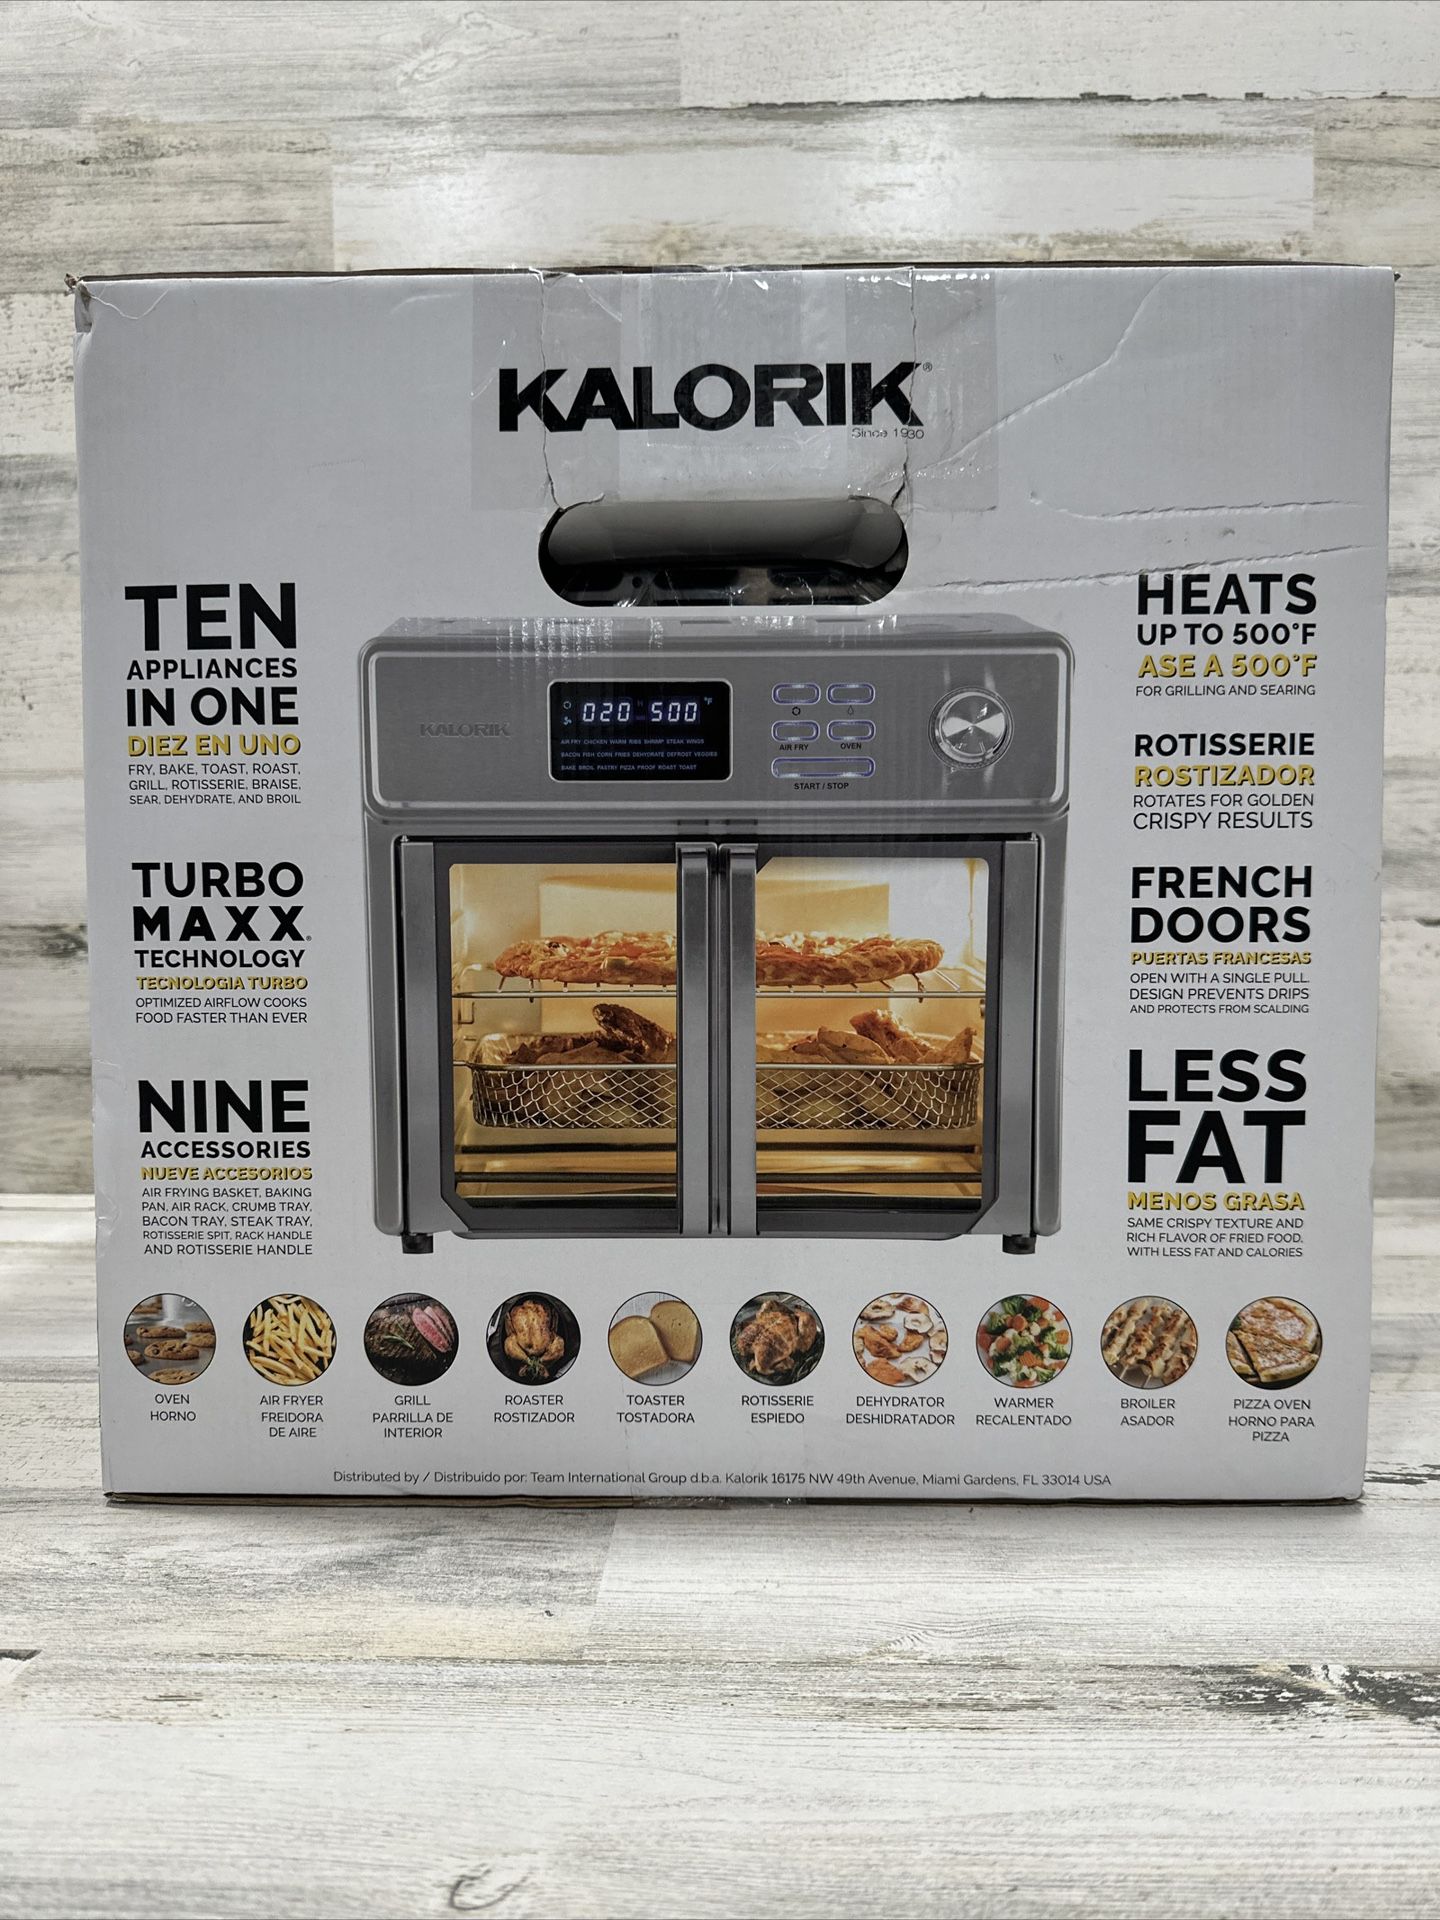 KALORIK MAXX XL 26qt Air Fryer Oven - 120V~60Hz~1700W (#AFO 46045 SS) - BRAND NEW!!!